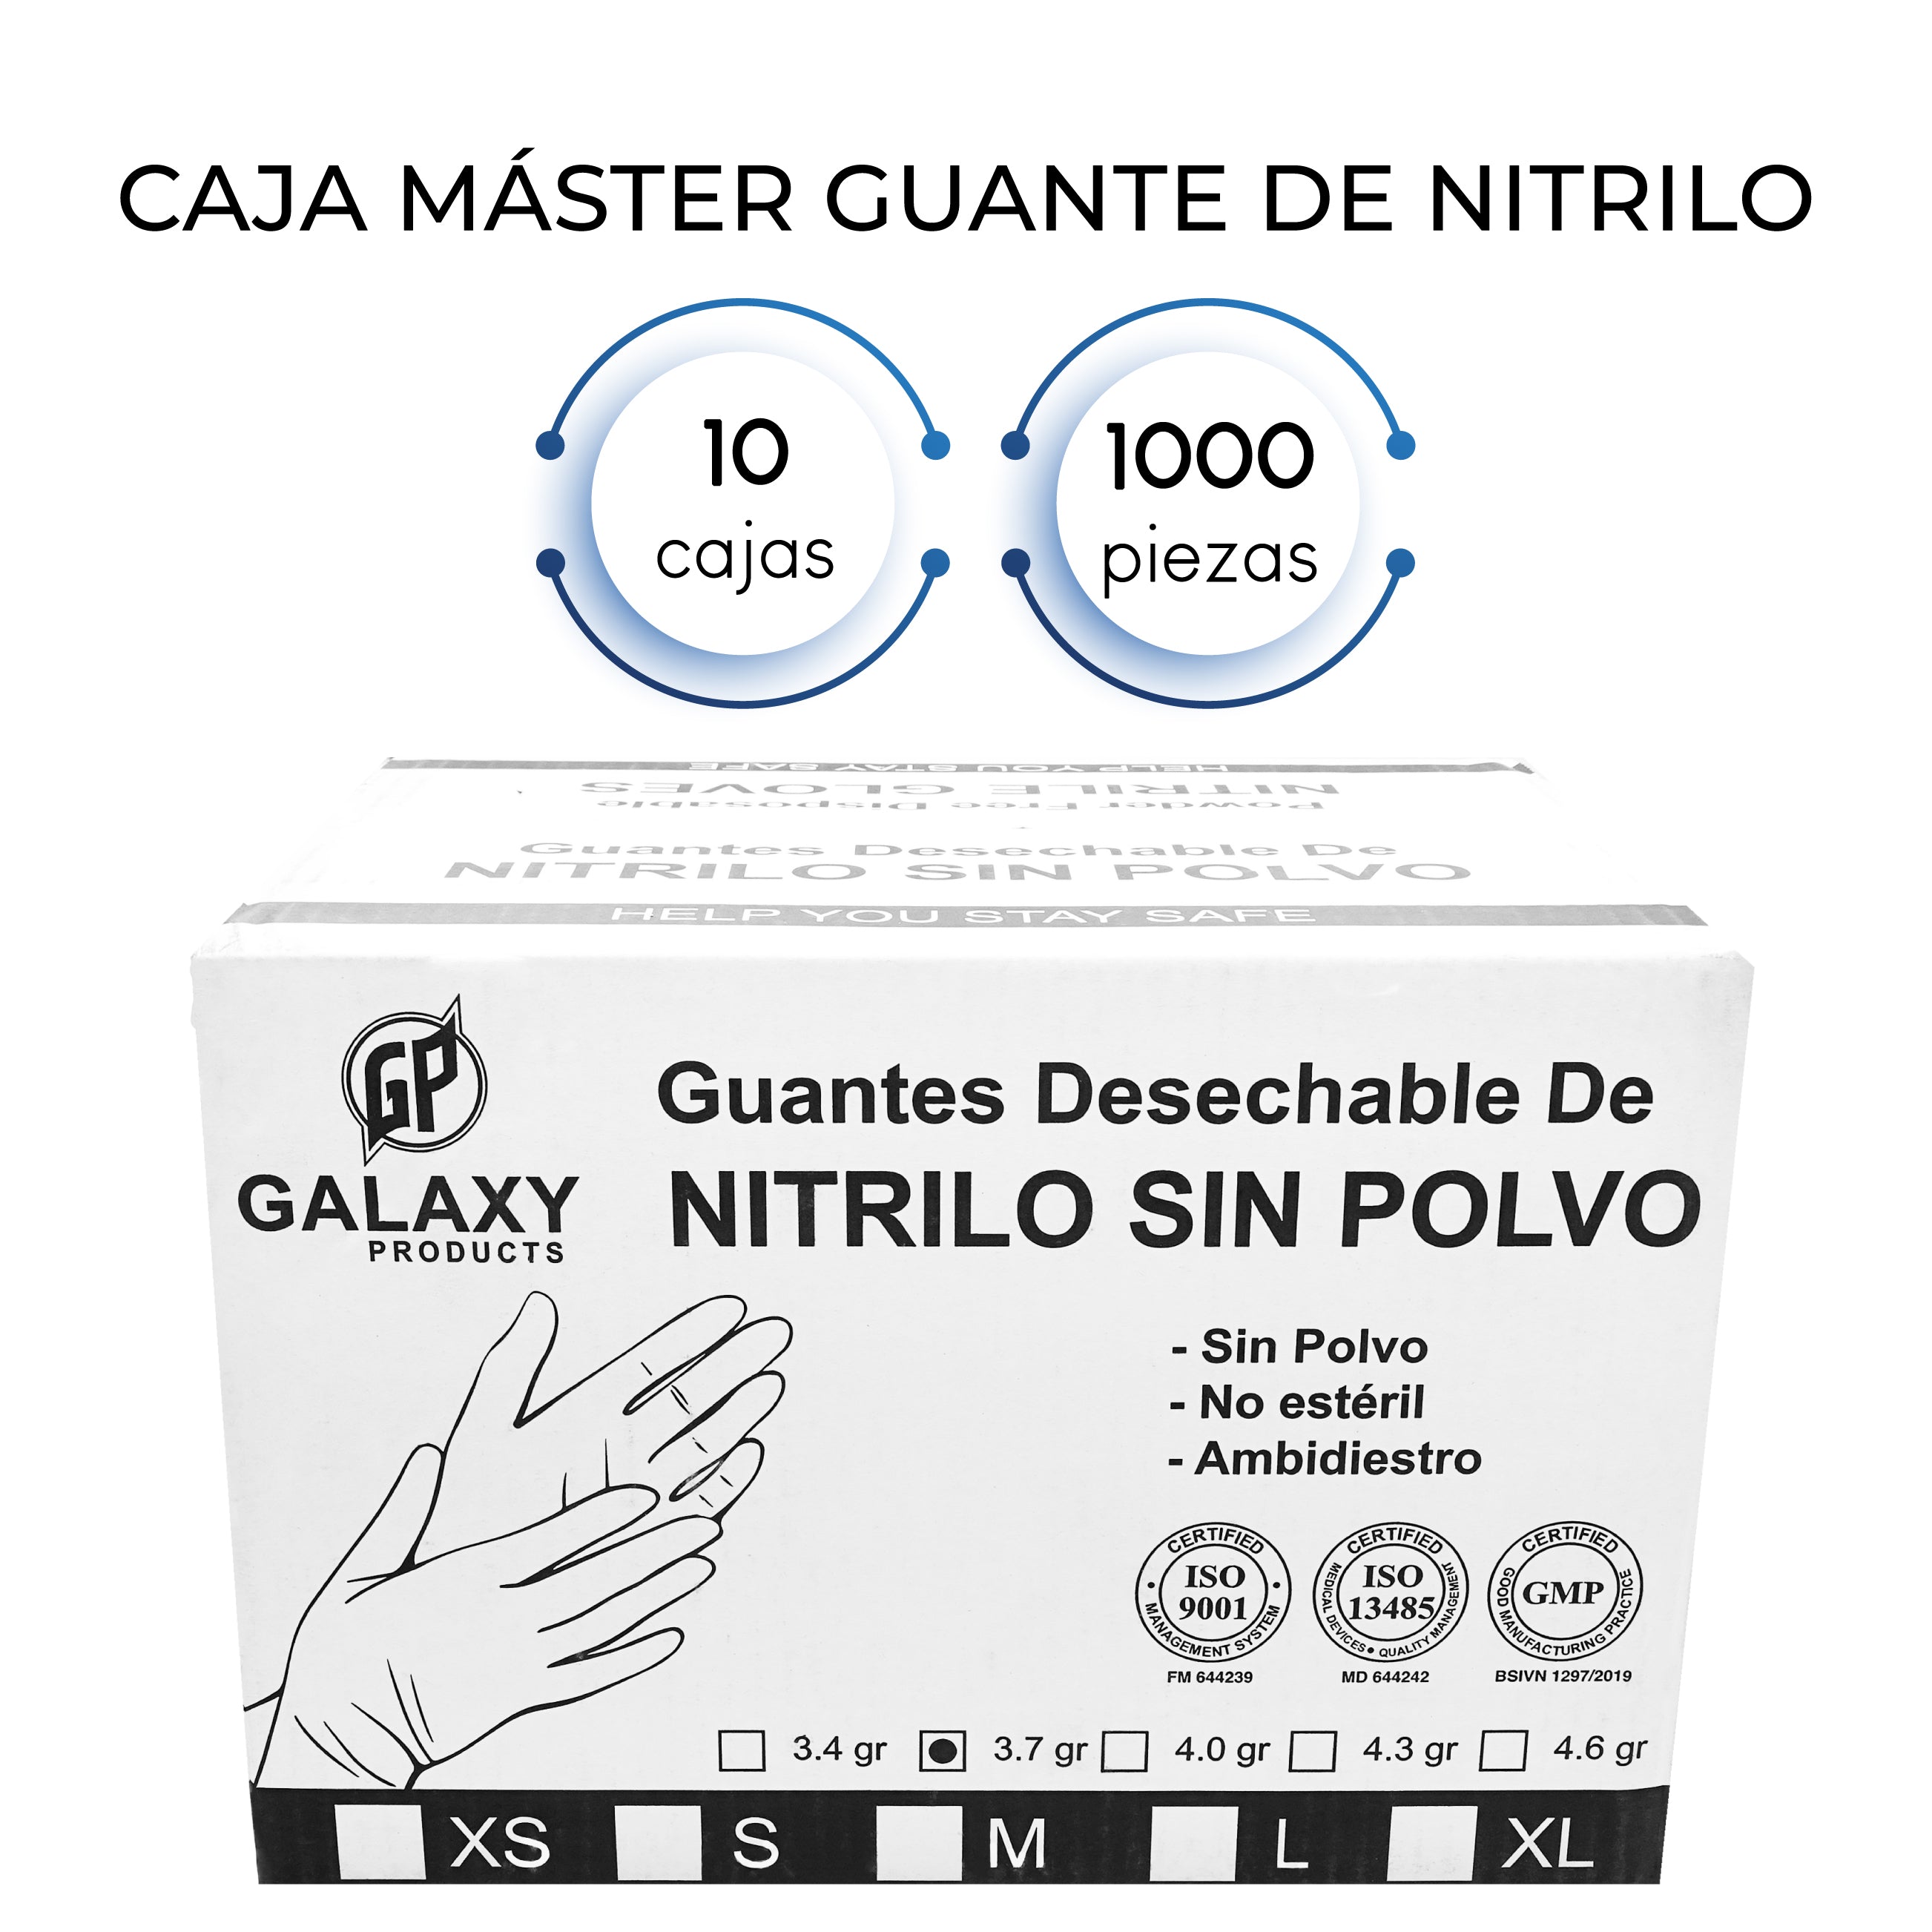 Caja Master Guante de Nitrilo (1000 Guantes)